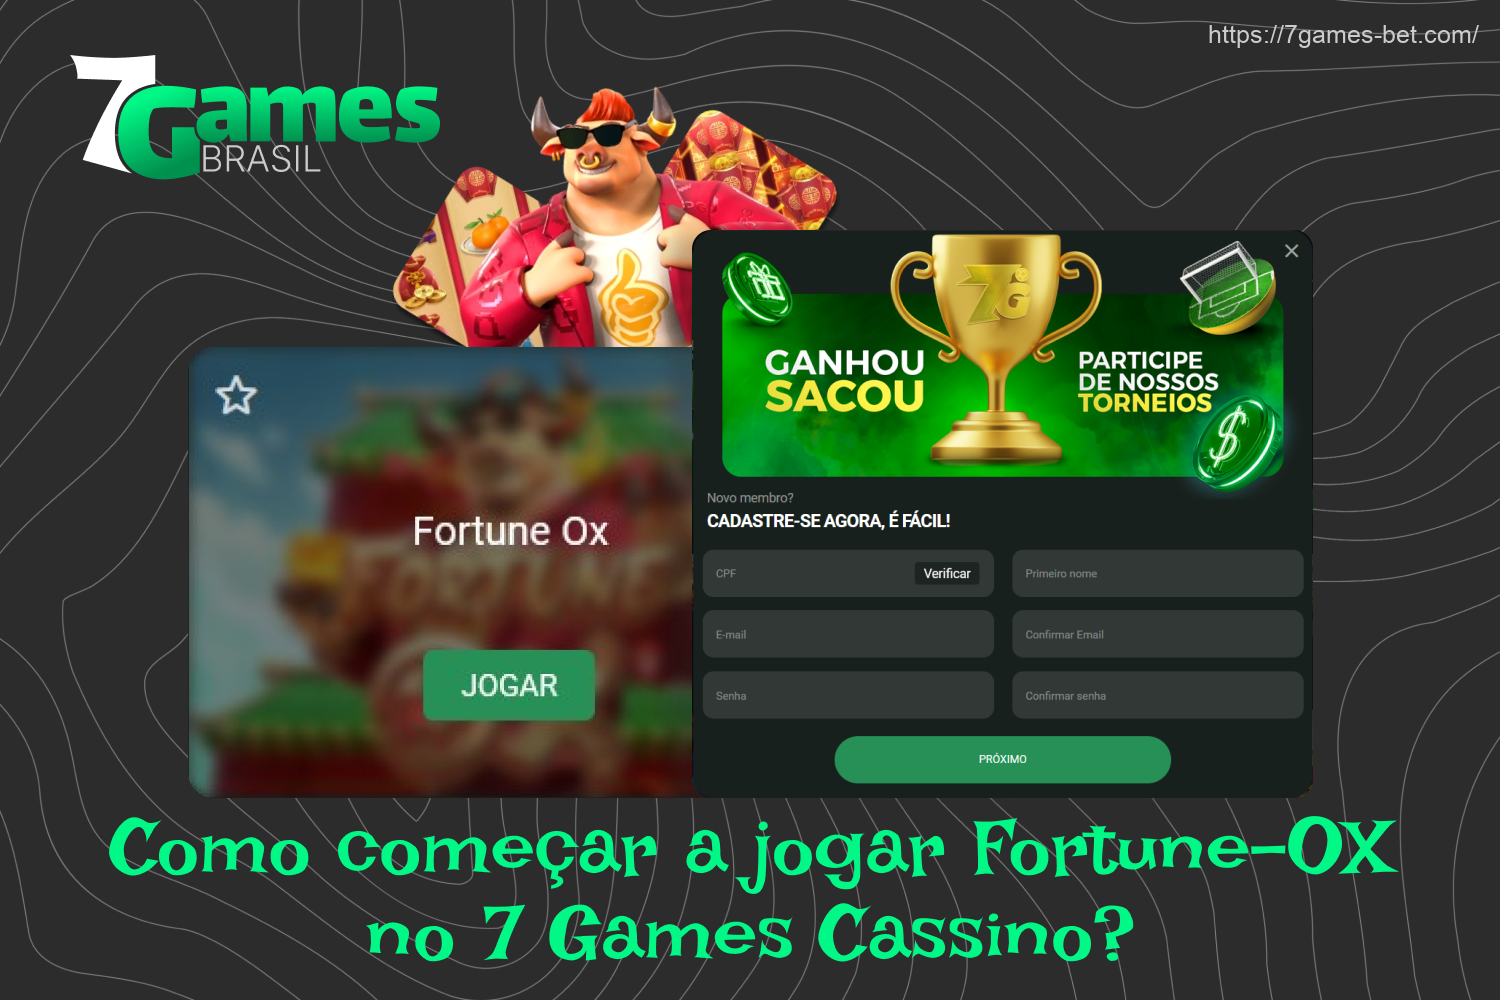 Os brasileiros podem começar a jogar Fortune Ox no 7Games depois de se registrar e fazer um depósito